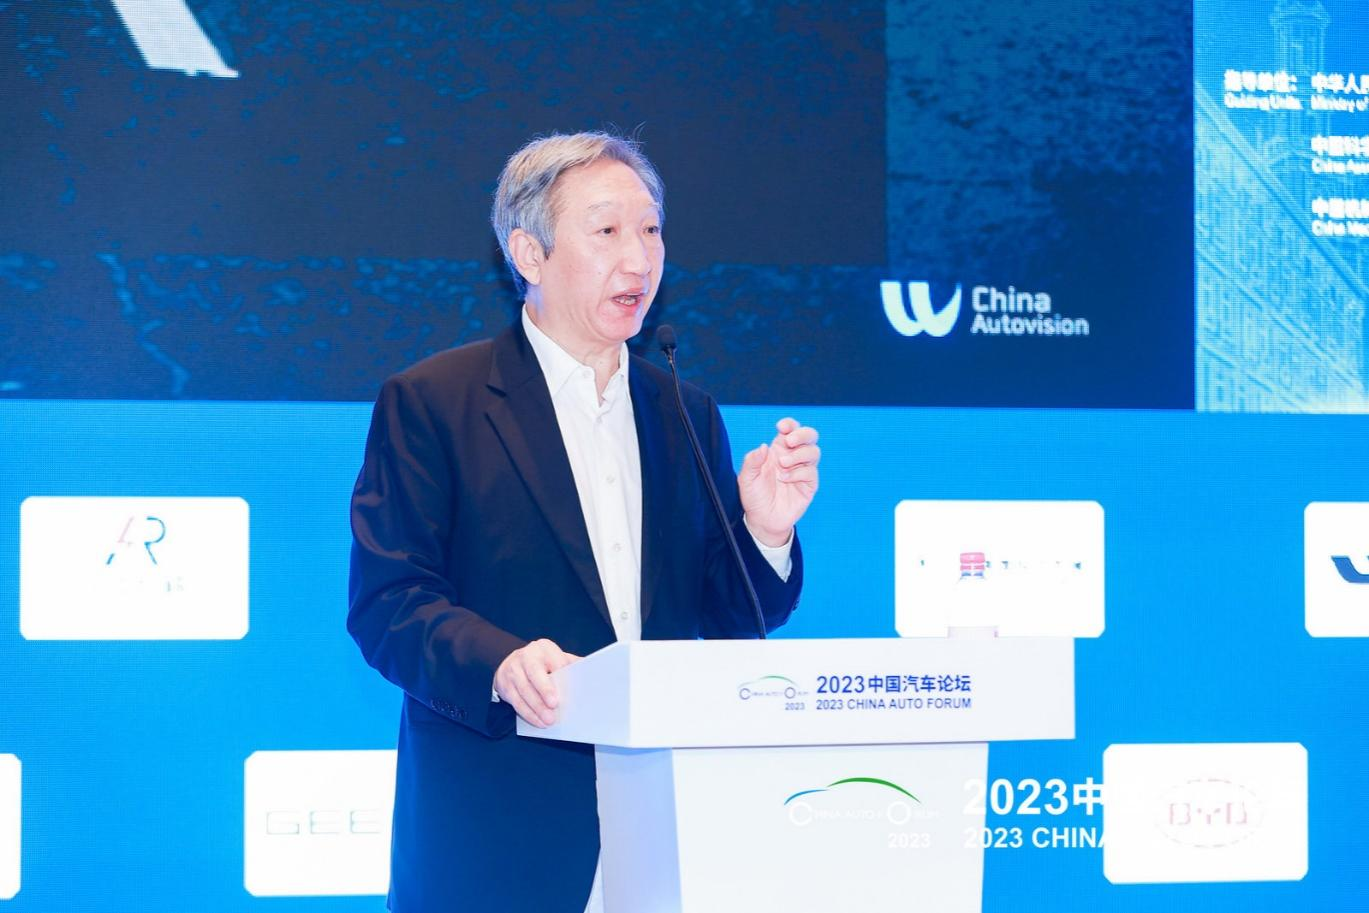 陈永：Autovision China助力中国汽车品牌国际化营销，让世界看见中国汽车